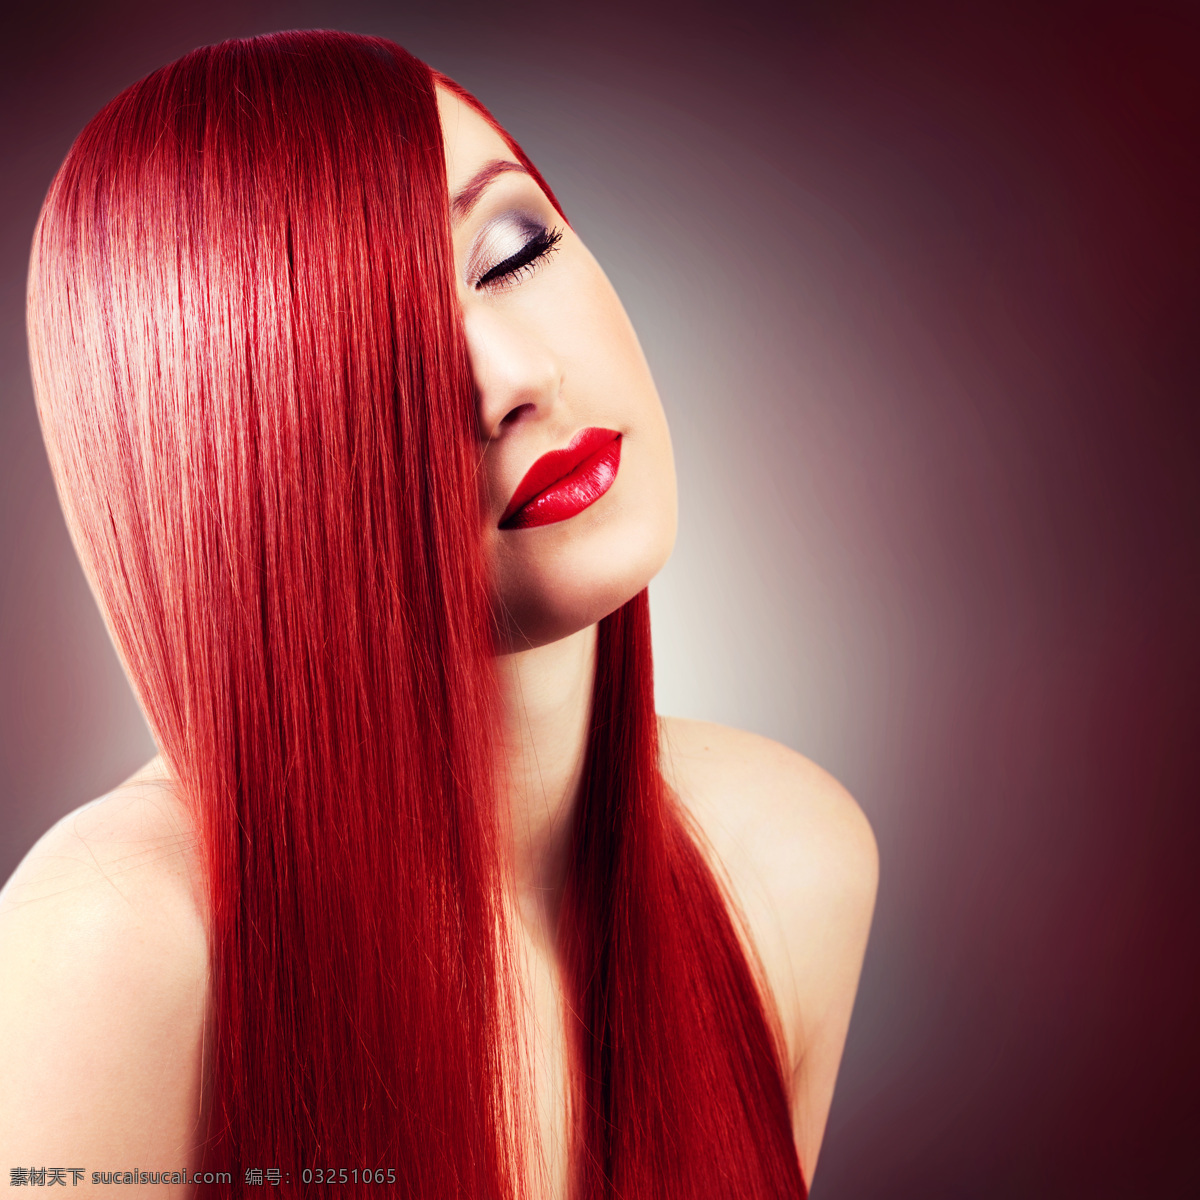 红色 头 大 美女图片 头发 美发 美女 女人 外国美女 美女模特 外国人物 人物图片